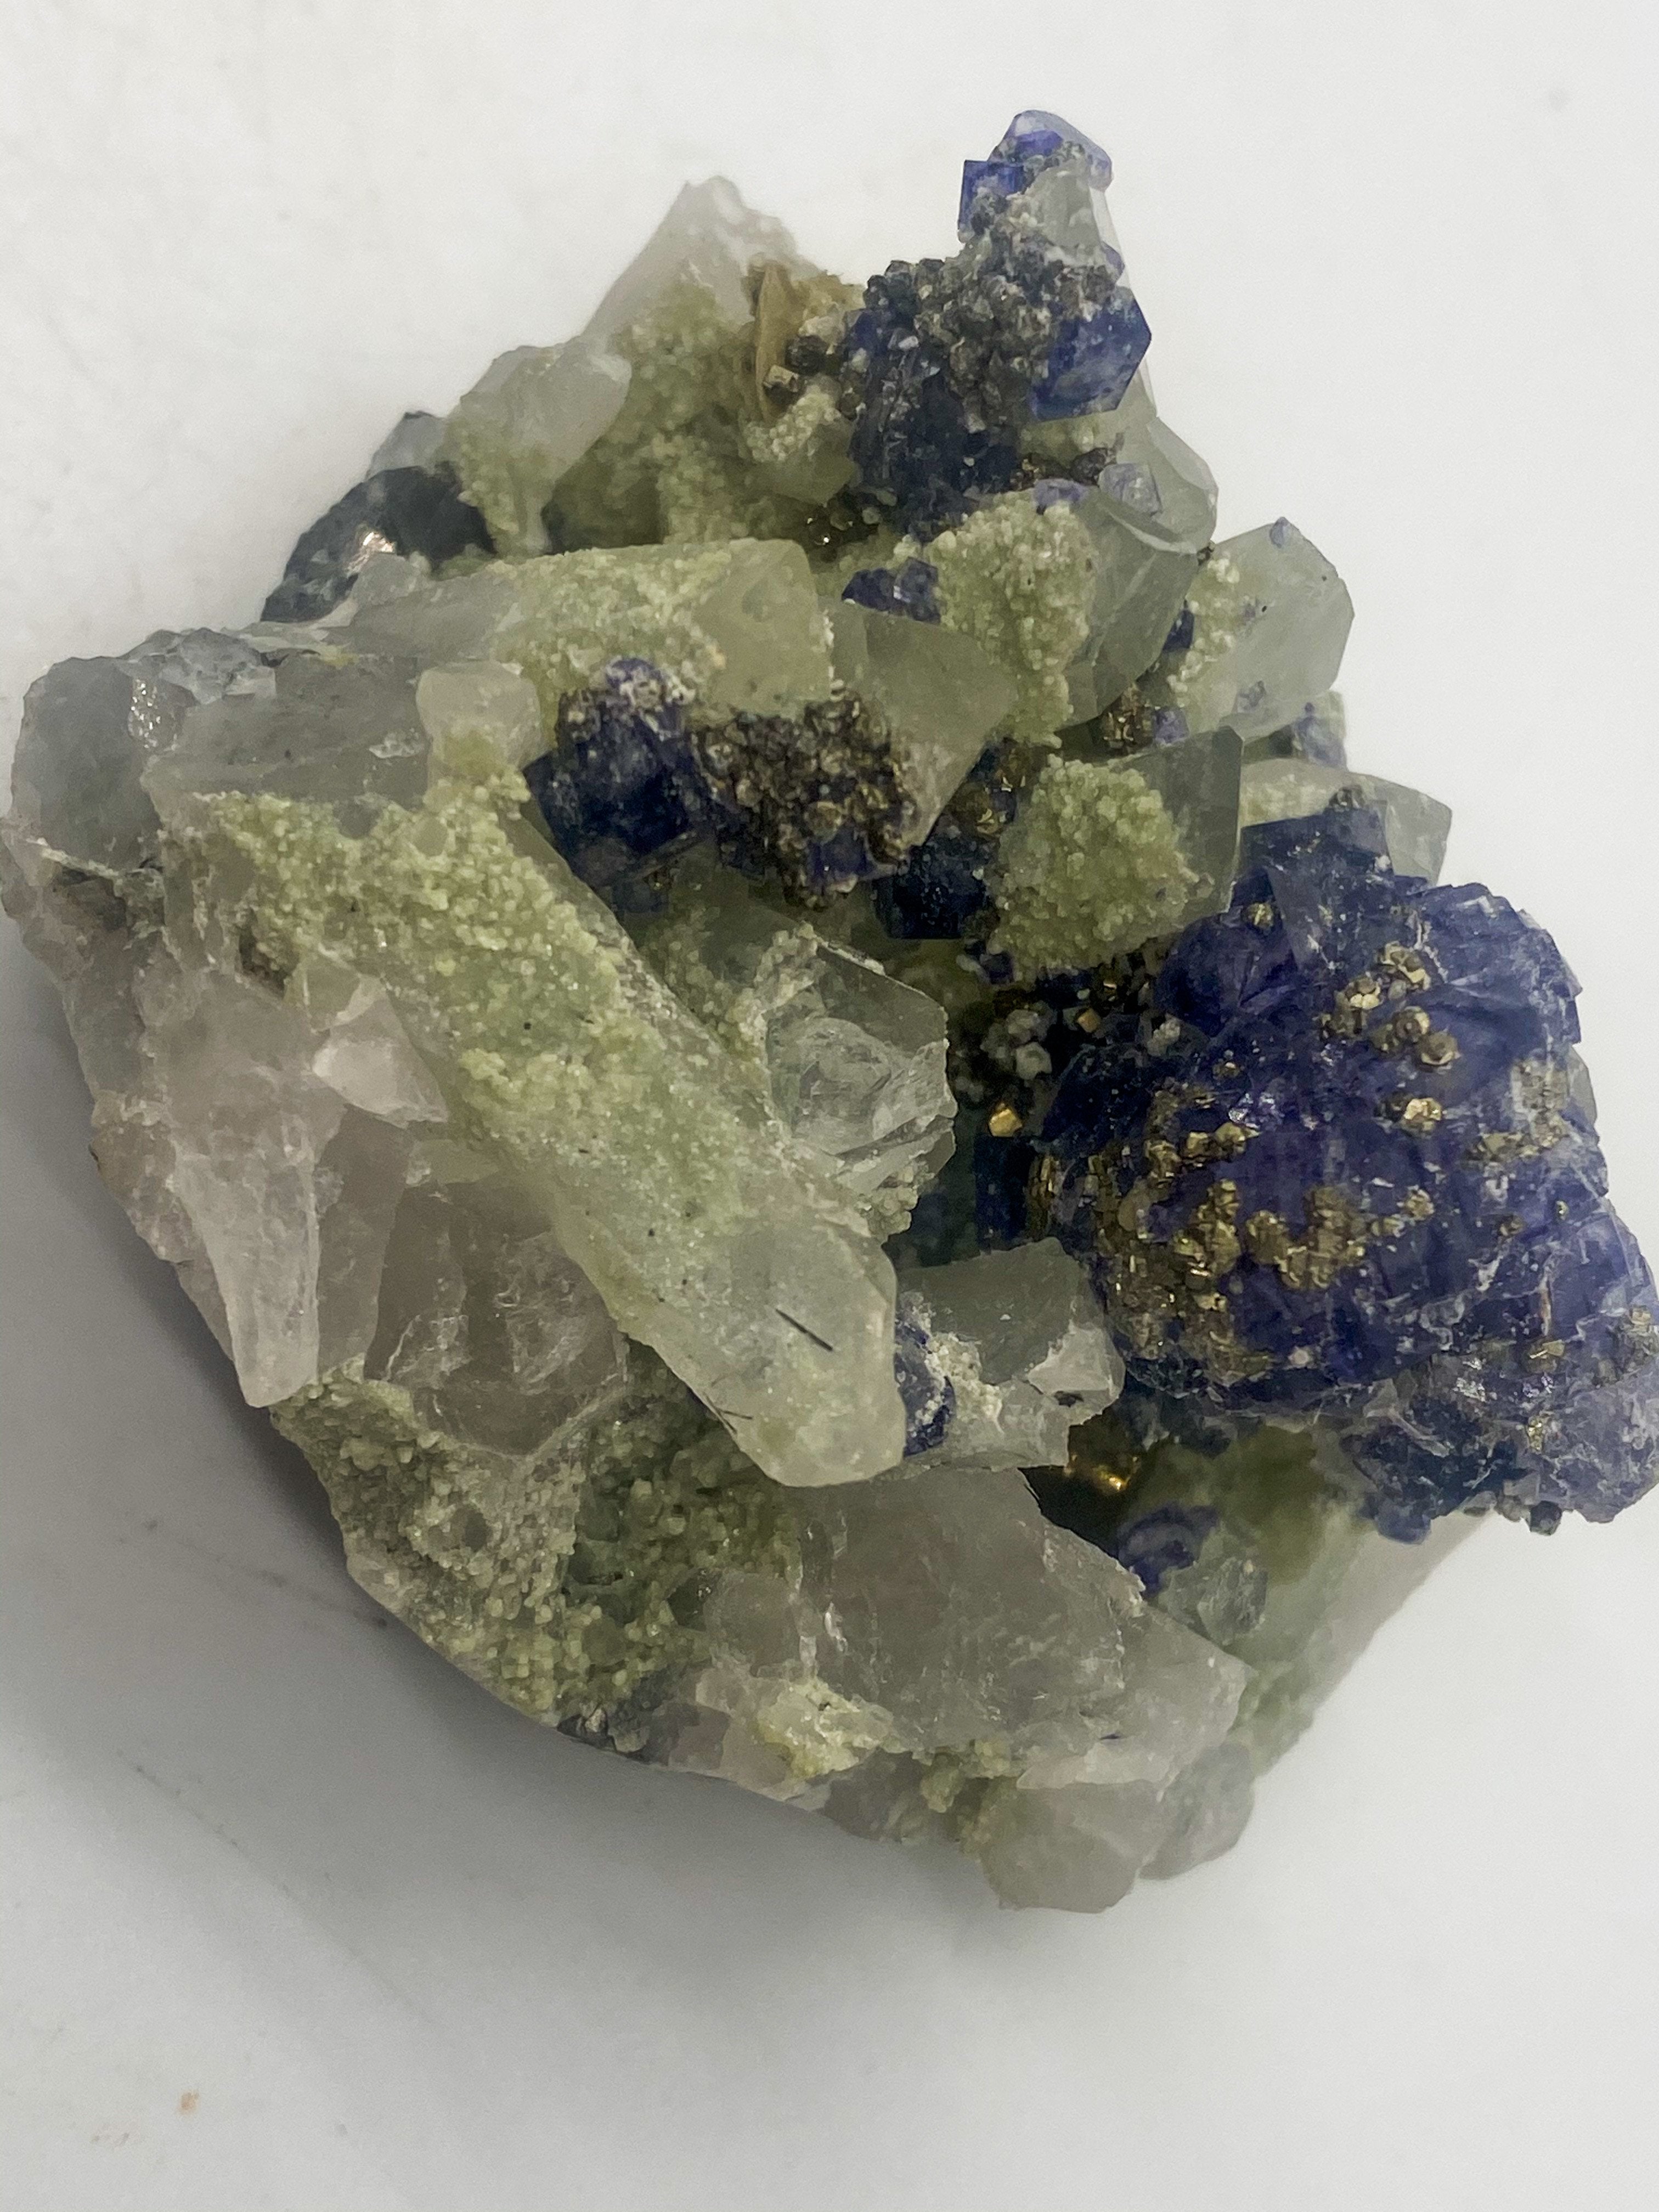 Purple Tanzanite on Quartz with Muscovite and Pyrite